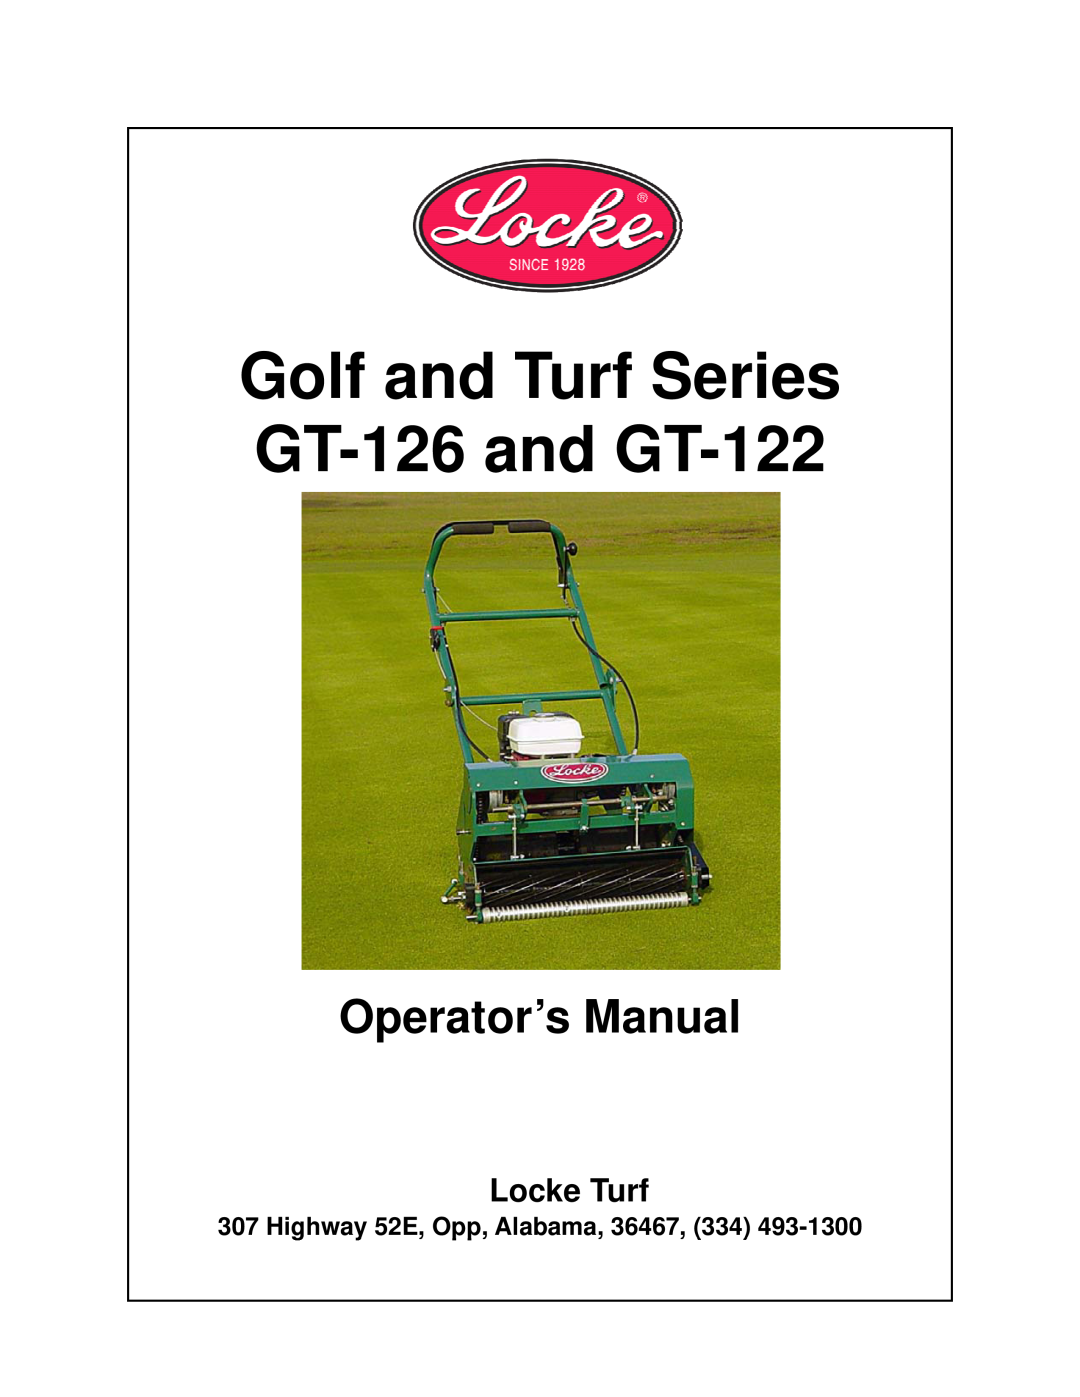 Locke GT-122, GT-126 manual 